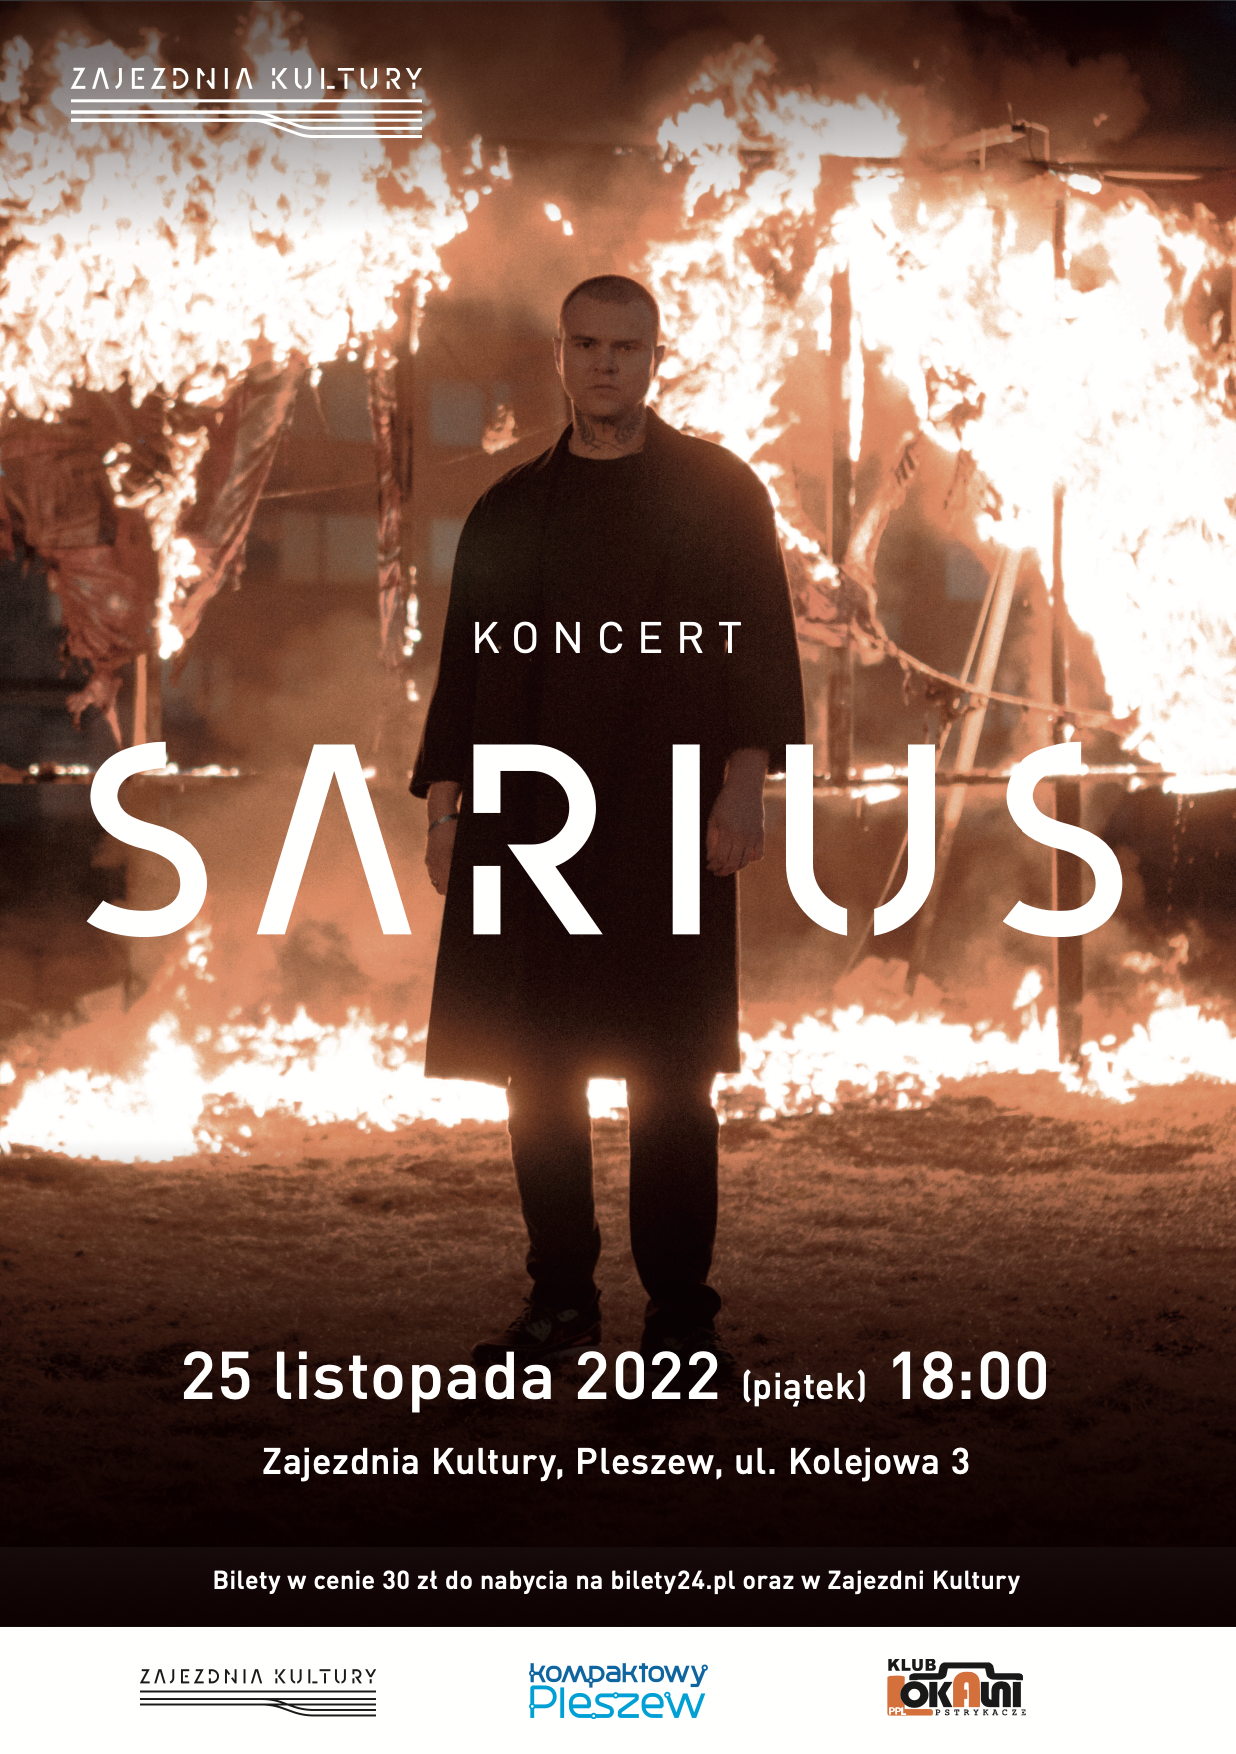 plakat koncertu Sariusa 25 listopda o godzinie 18:00 w Zajezdni Kultury w Pleszewie